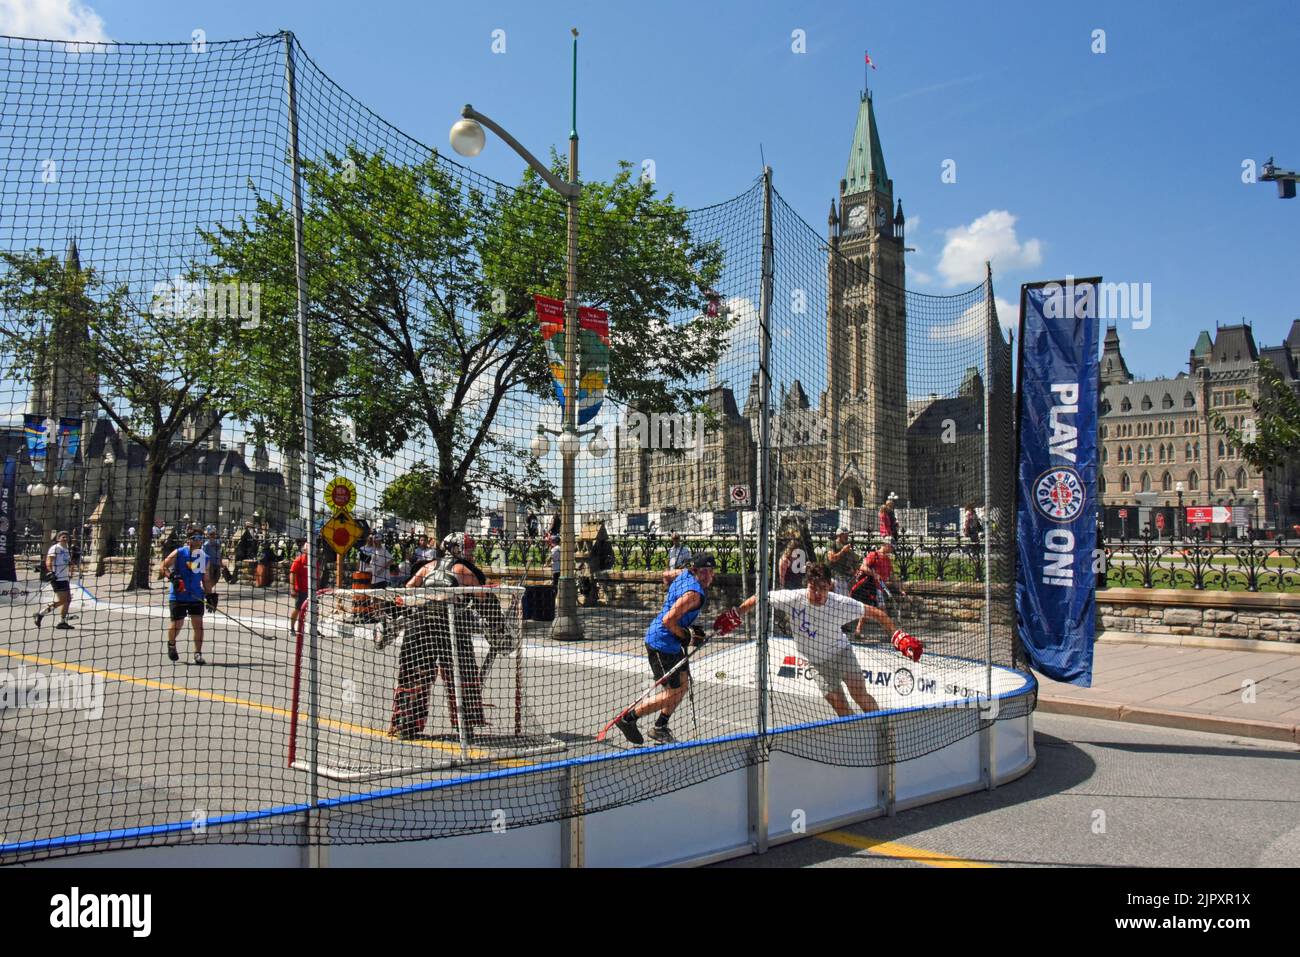 Ottawa, Kanada - 20. August 2022: Spielen Sie Weiter! Kanadas größtes Street Hockey Festival kehrt nach Ottawa zurück, und dieses Mal findet es auf der Wellington Street vor dem Parliament Hill statt. Stockfoto